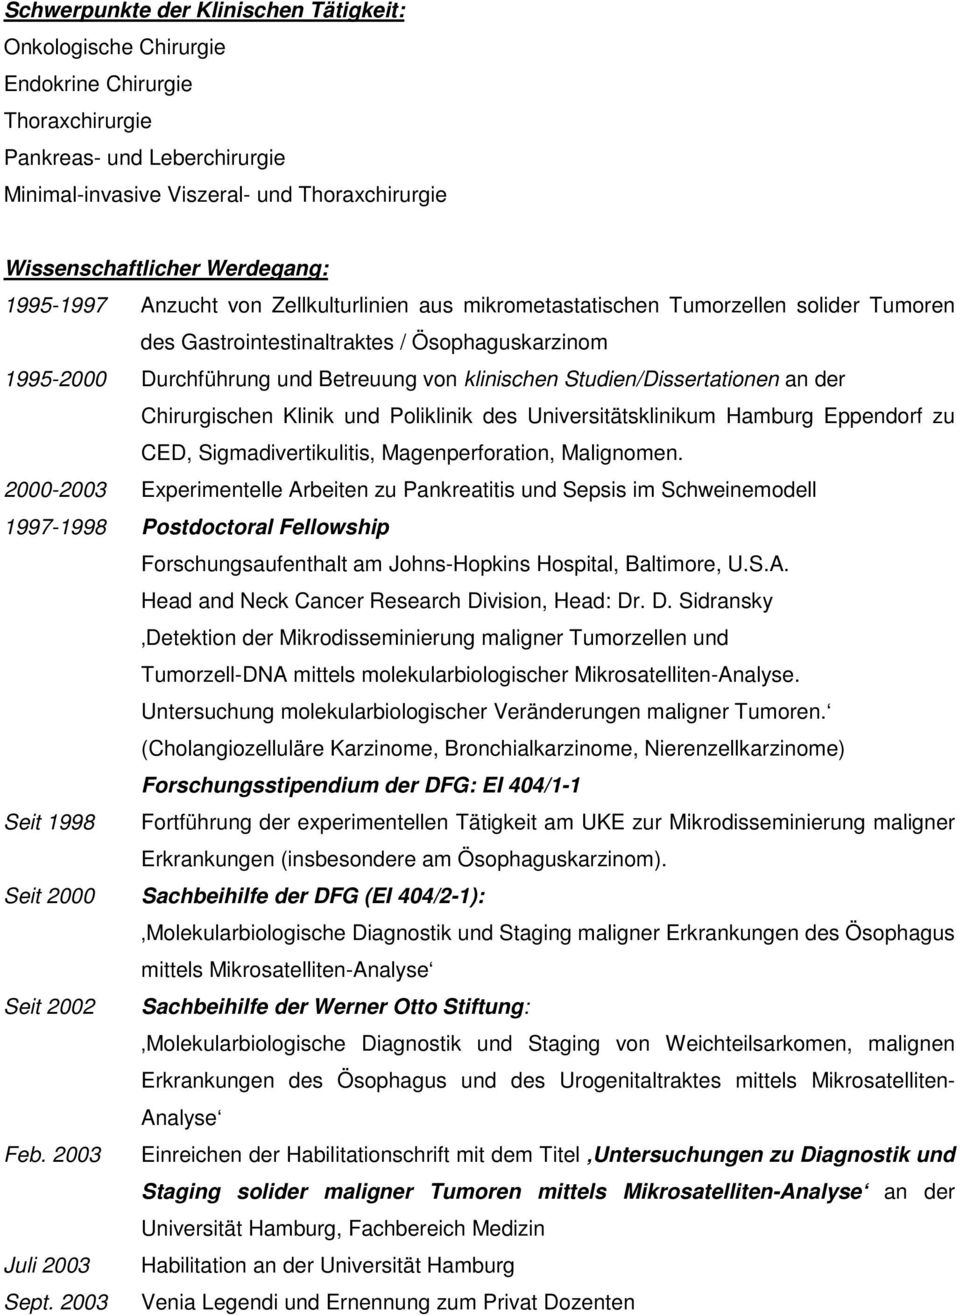 klinischen Studien/Dissertationen an der Chirurgischen Klinik und Poliklinik des Universitätsklinikum Hamburg Eppendorf zu CED, Sigmadivertikulitis, Magenperforation, Malignomen.